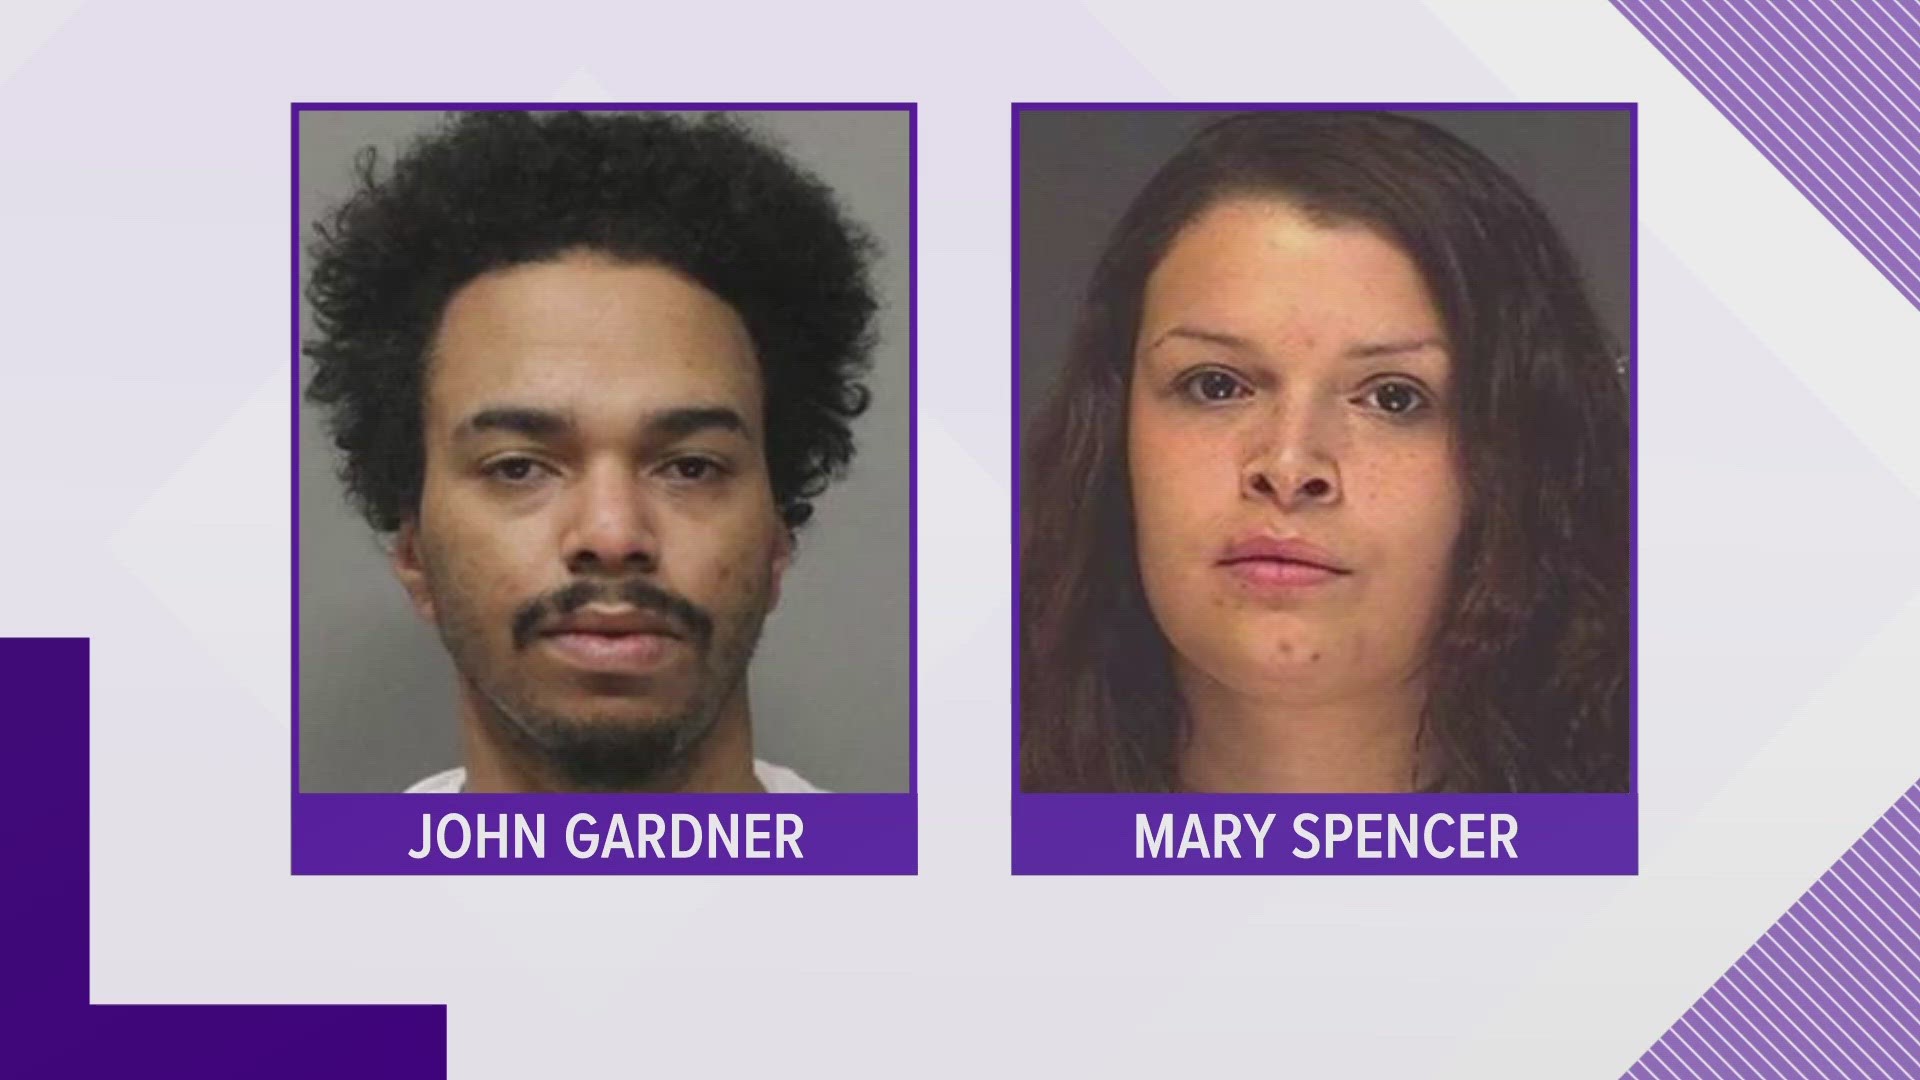 Spokane Police believe John Gardner was armed when he and Mary Spencer stole a women's handbag in downtown Spokane.